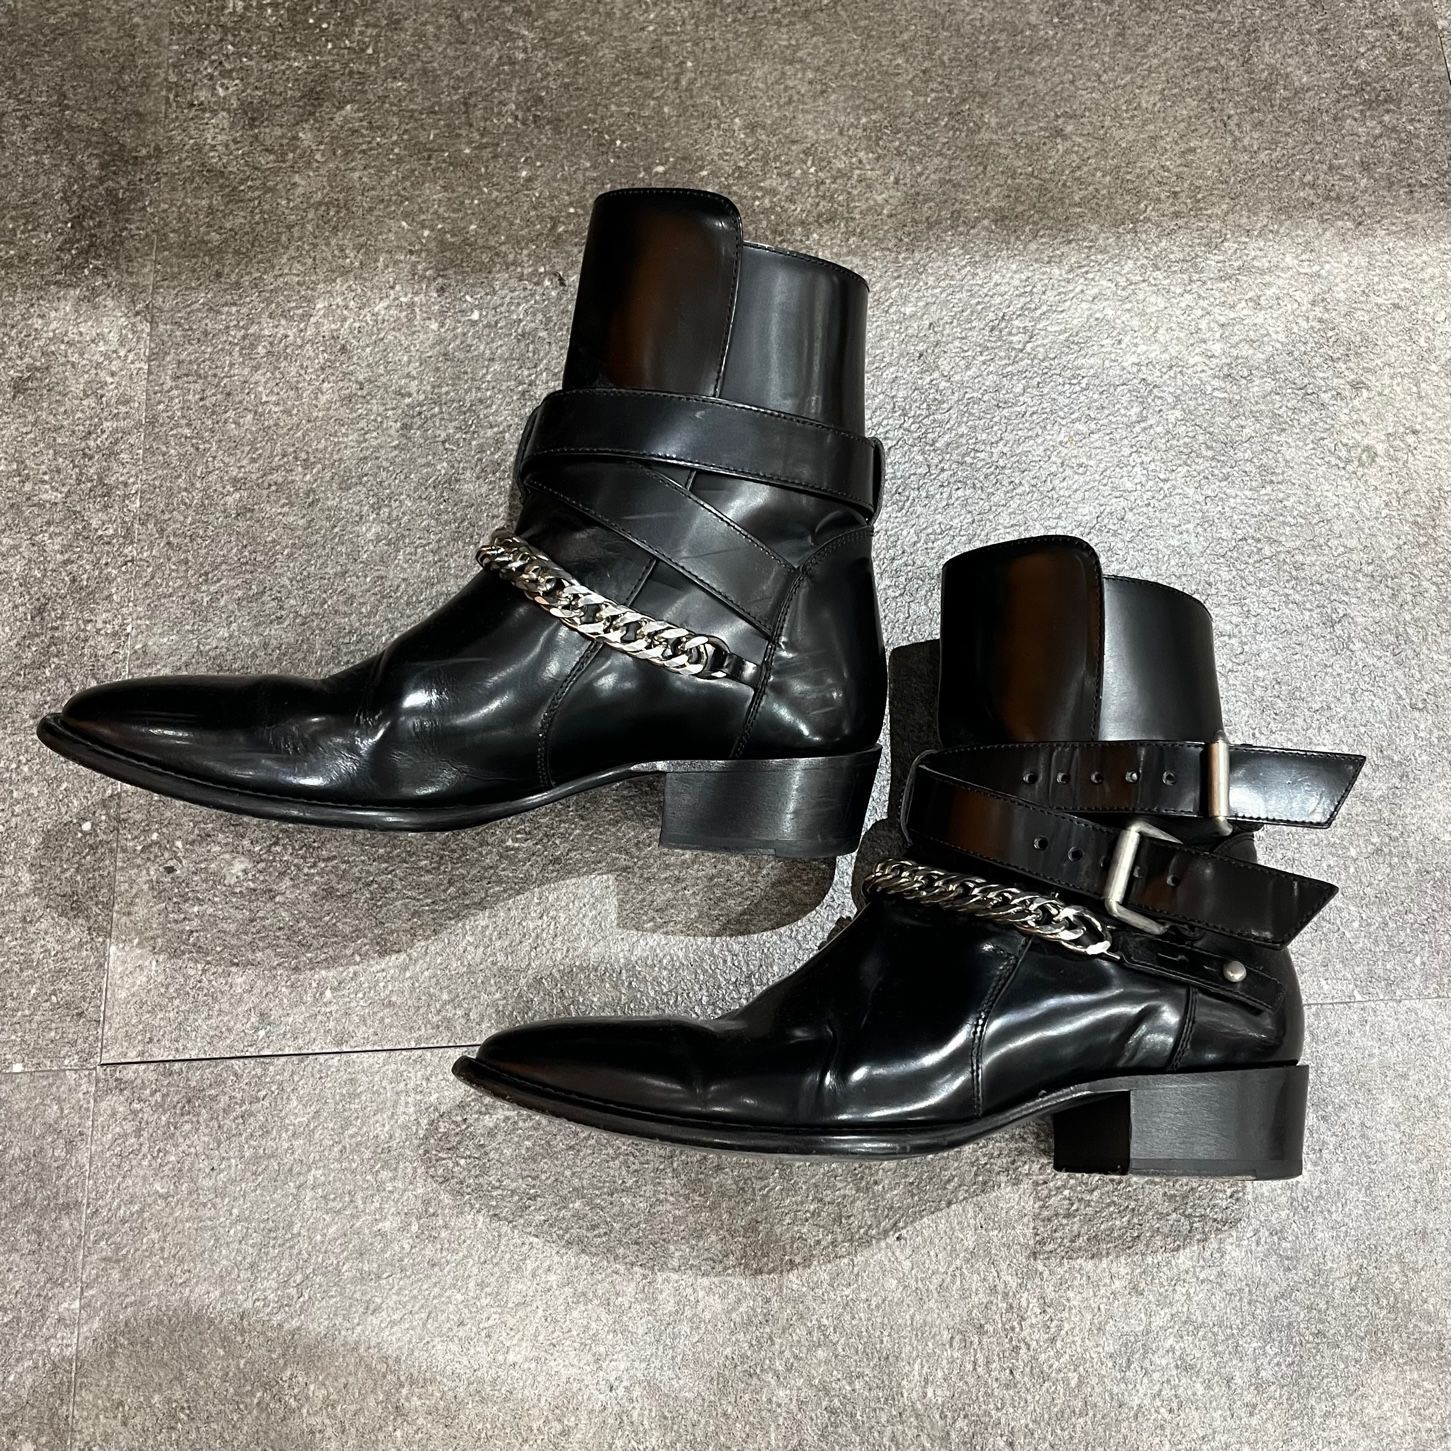 カタログギフトも！ アミリ メンズ AMIRI】チャンキーソール ブーツ AMIRI(アミリ) - シューズ ブーツ(メンズ) Leather ブーツ  Boots カーフレザー 海外通販のBUYMA (AMIRI Black メンズ靴